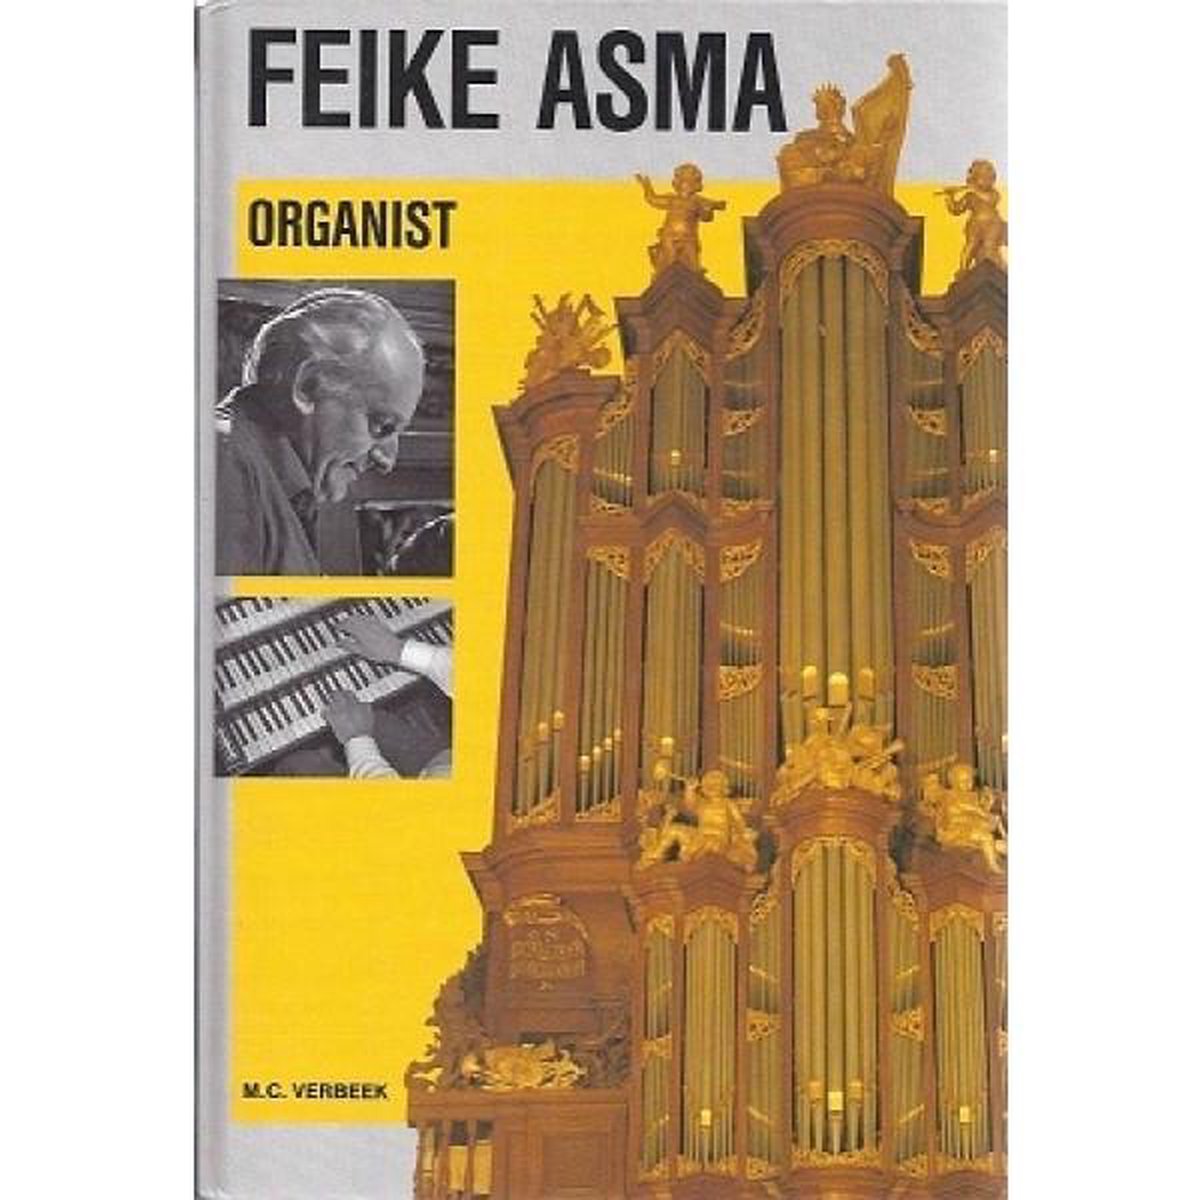 Feike Asma, Organist